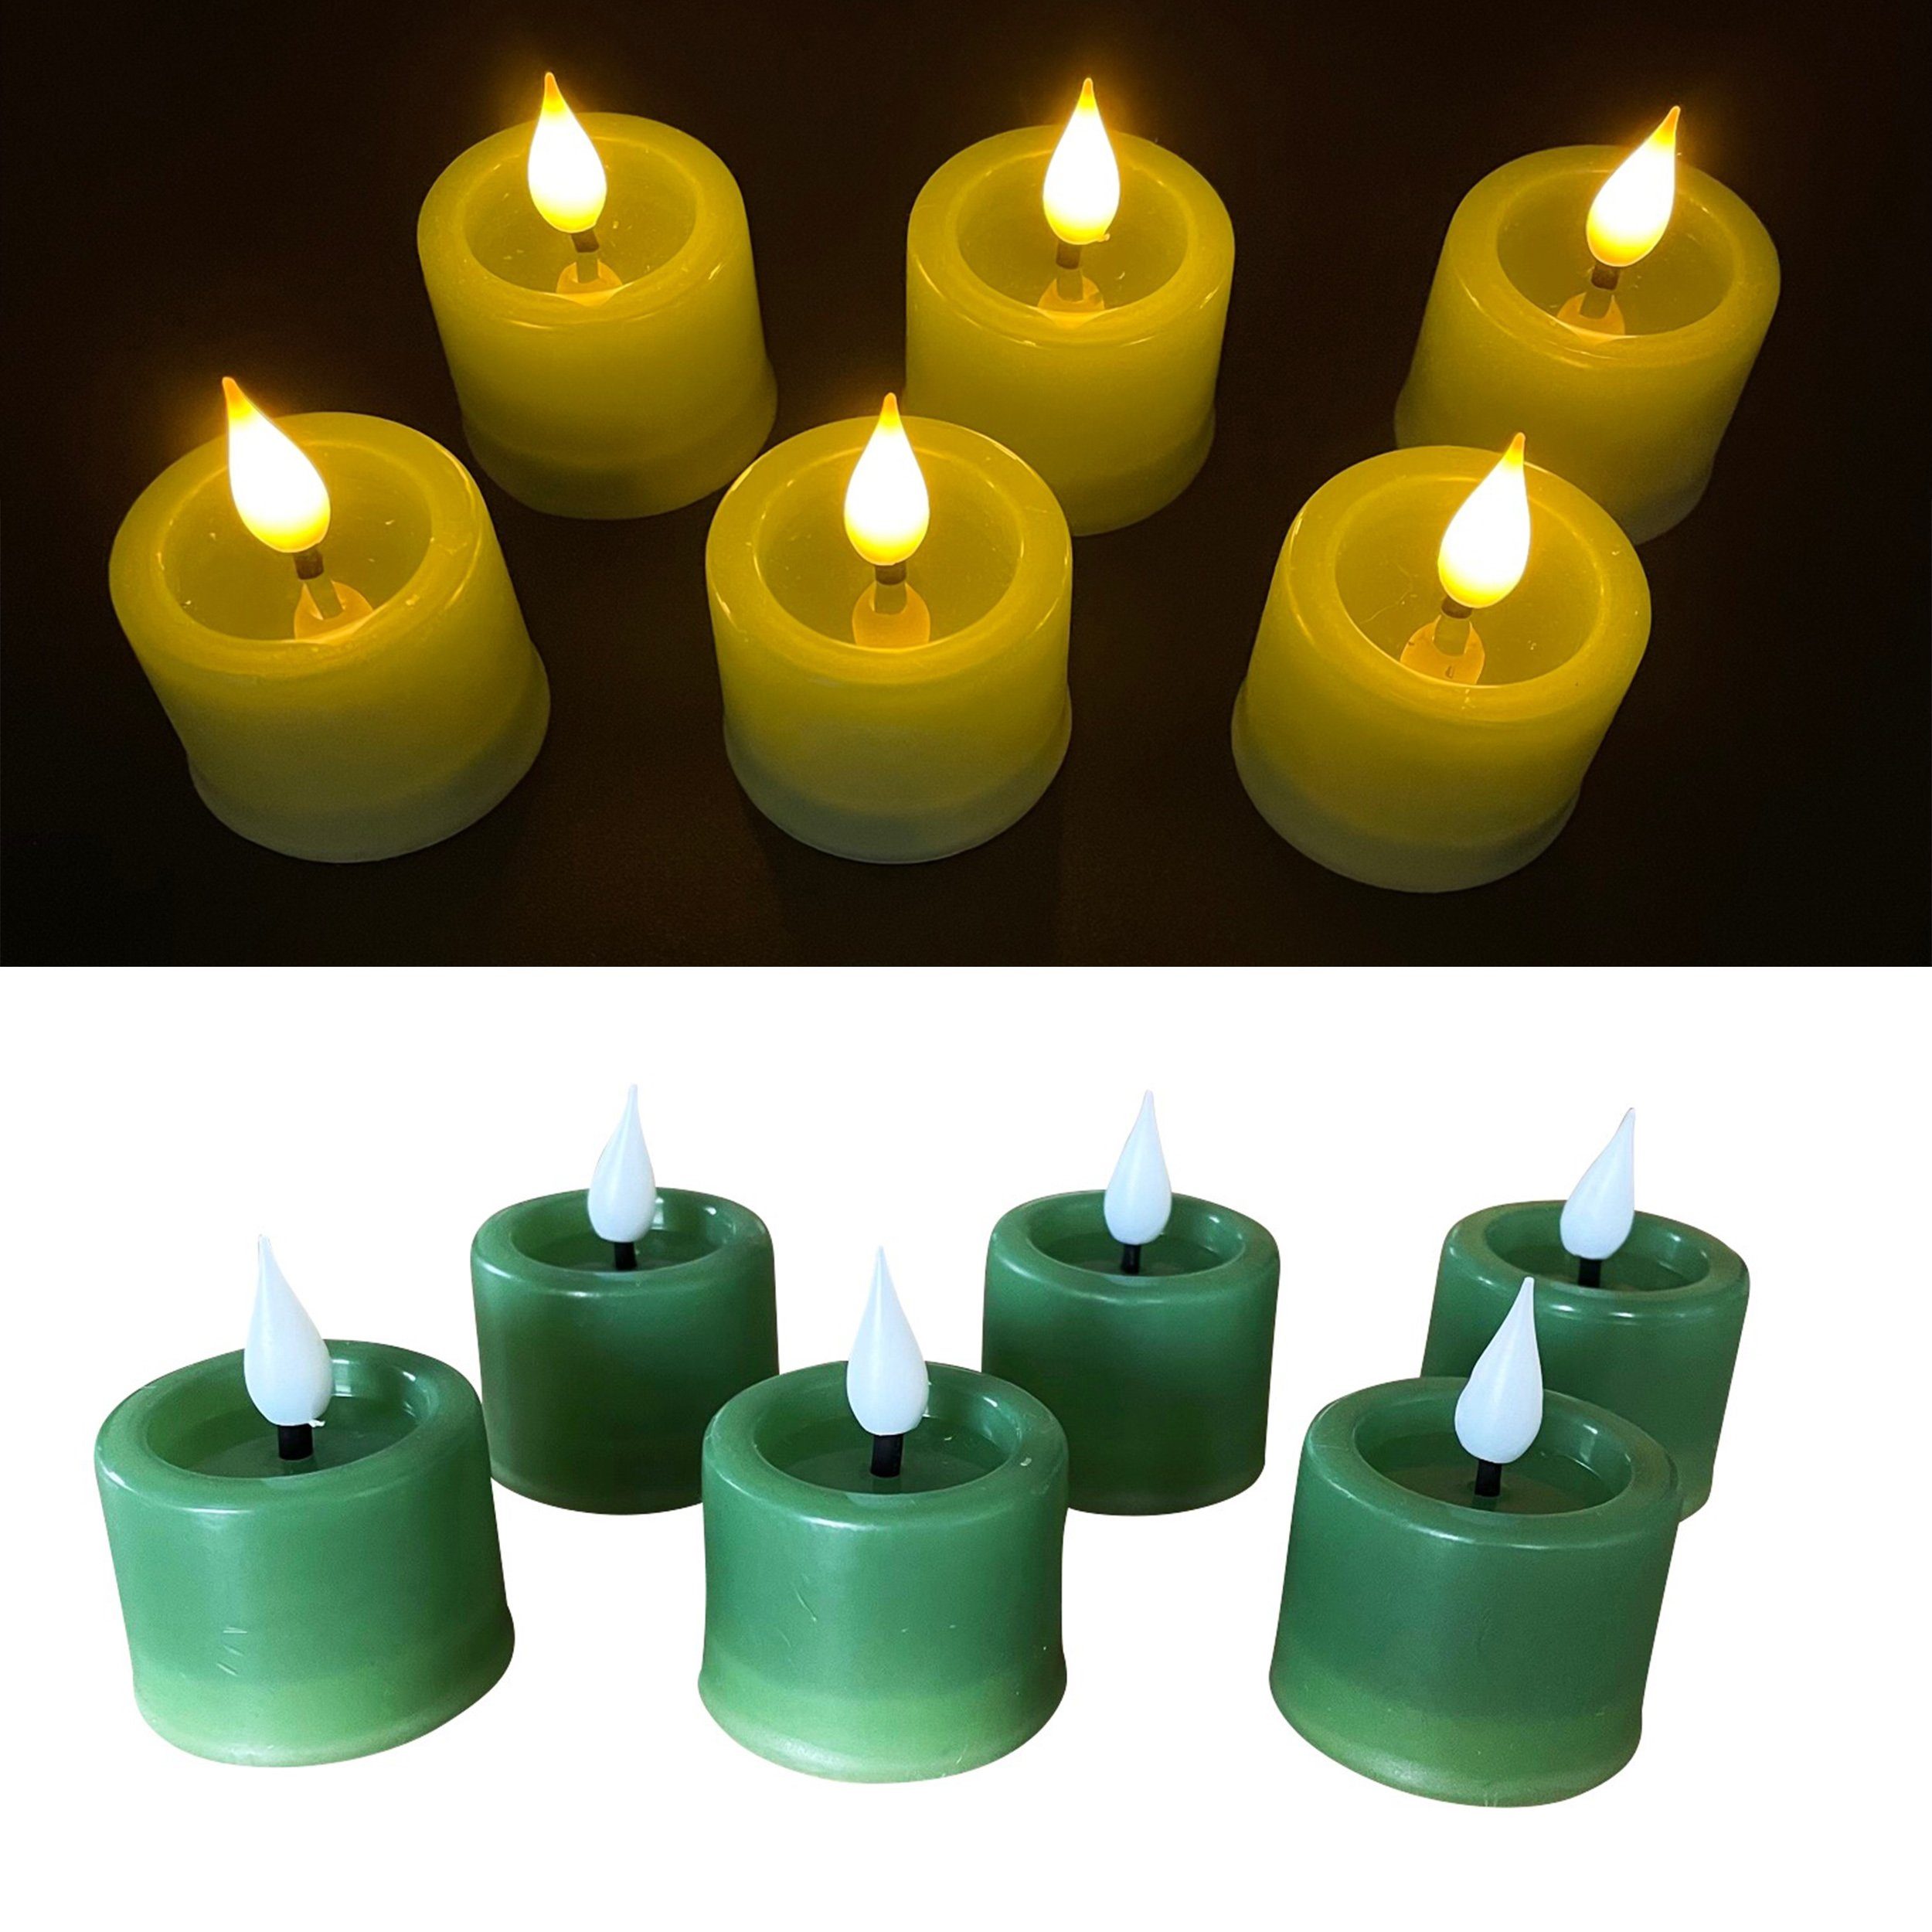 Online-Fuchs LED-Kerze als 6er Set Teelichter mit Flamme, GRÜN 191 (mit Echtwachs überzogen, spiegelnde Flamme), Maße: 4 x 3 cm, Fernbedienung, 6-Stunden-Timer